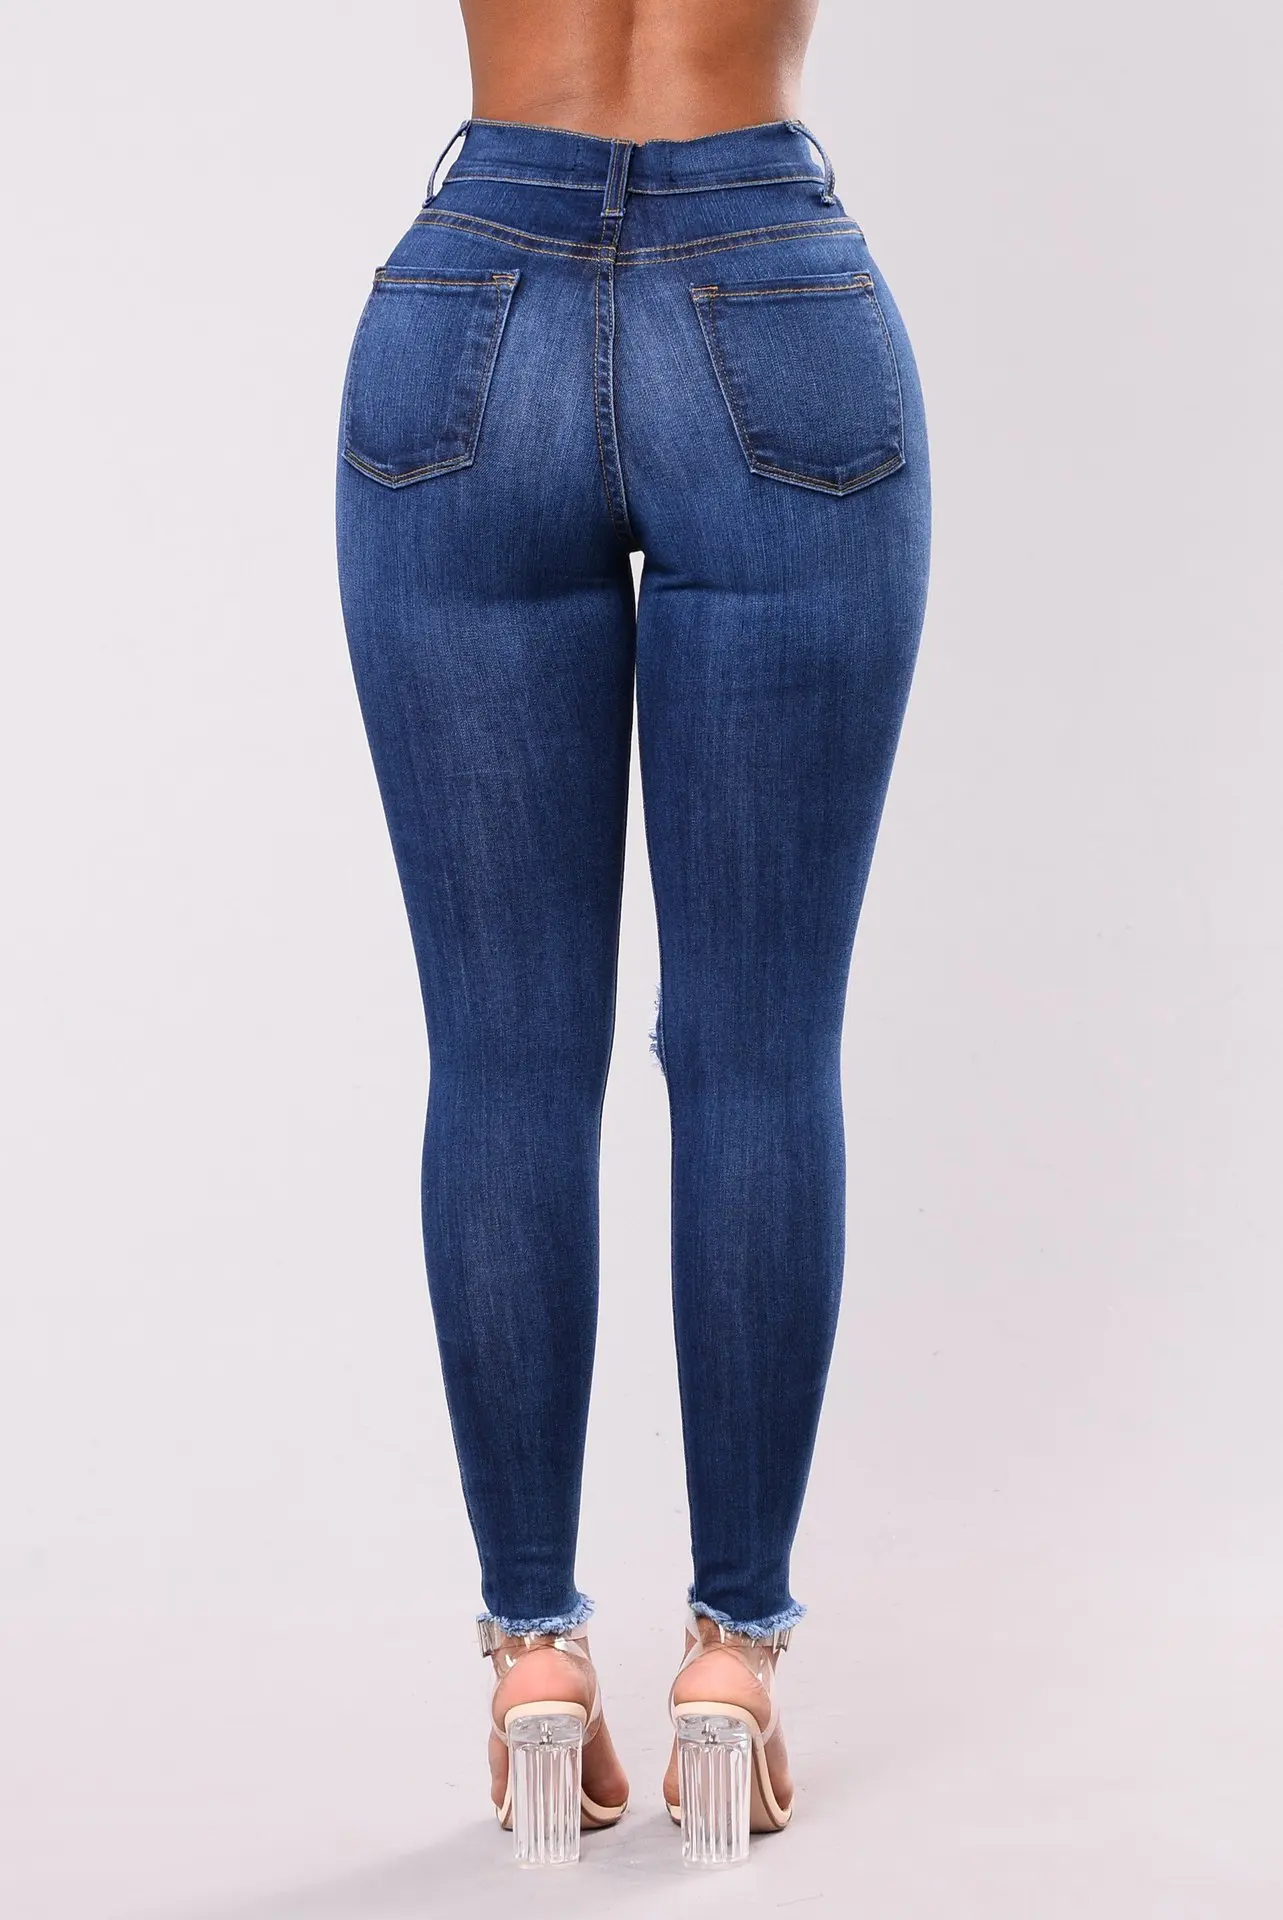 Женские модные повседневные джинсы с потертостями, обтягивающие джинсы, стиль, популярные модели, европейский стиль